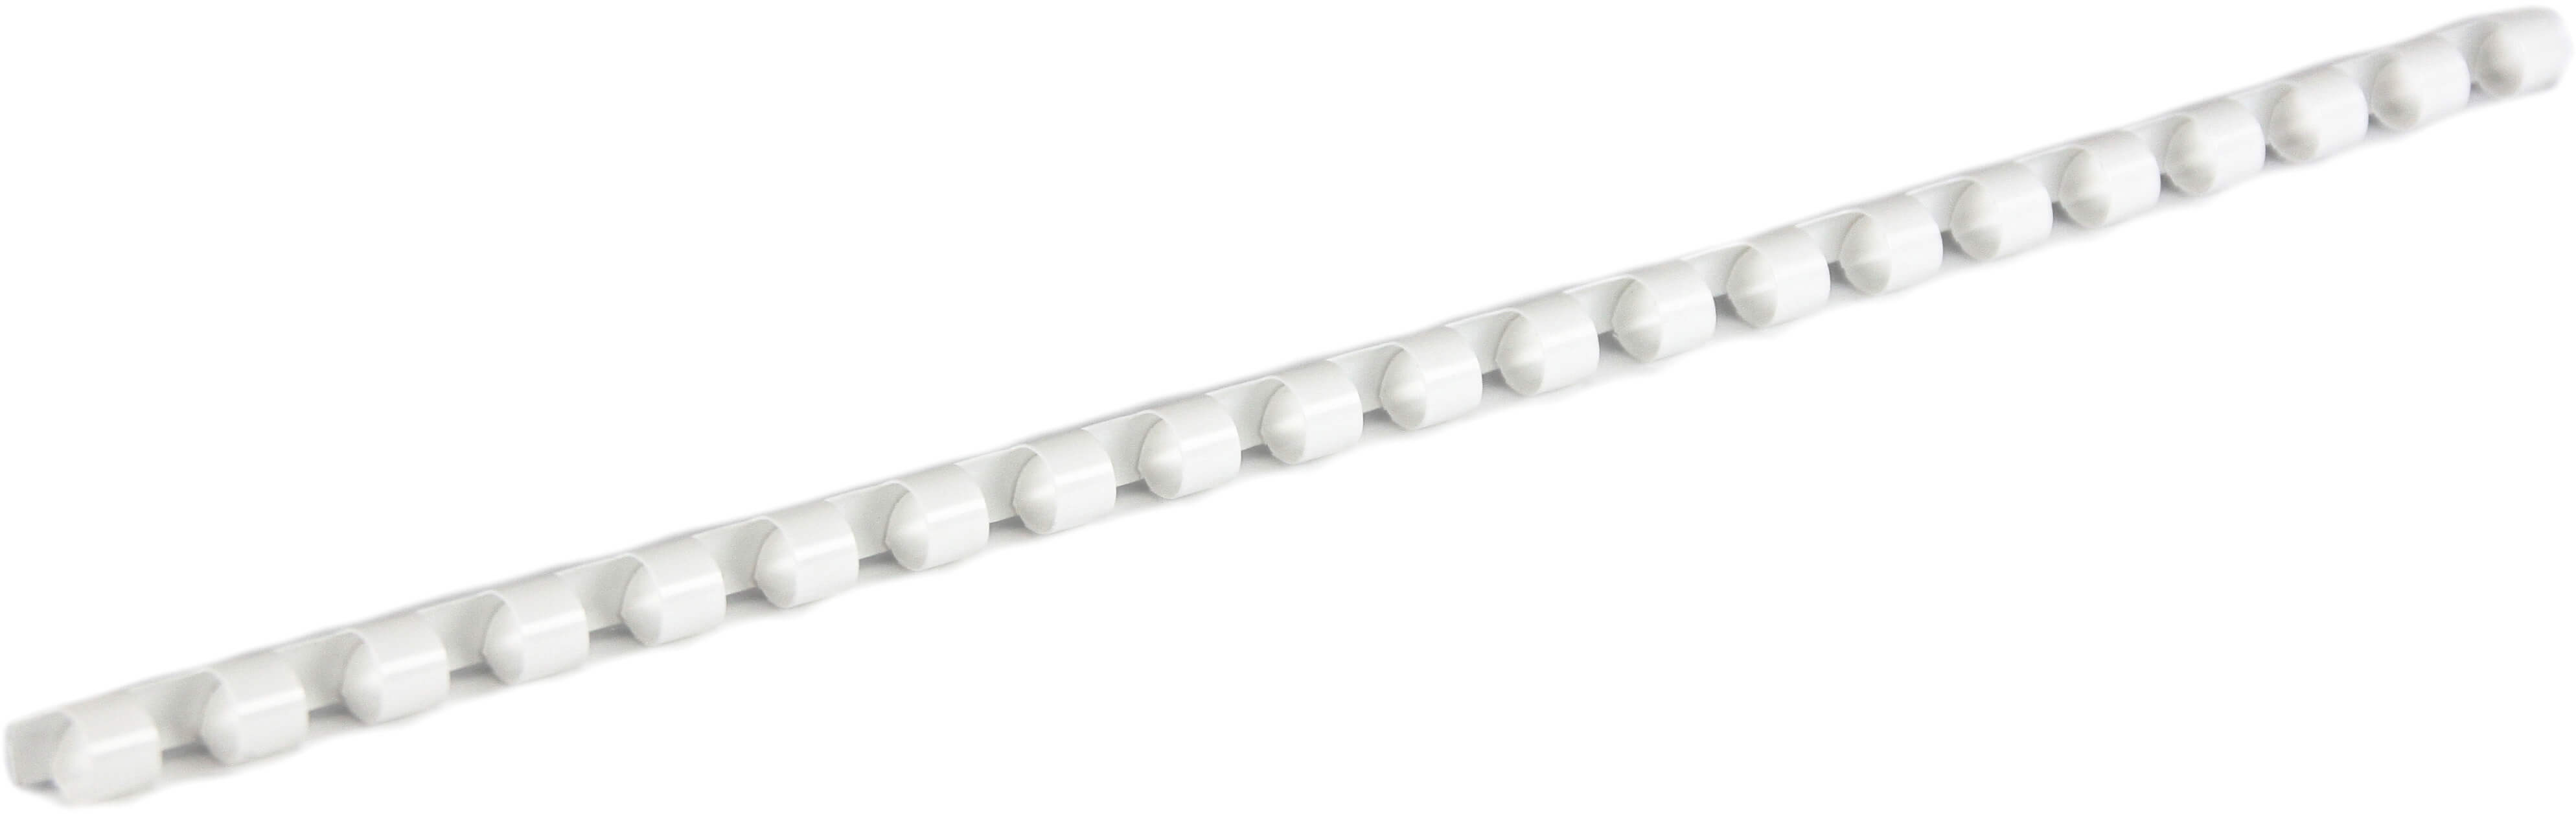 Plastikbinderücken 21 Ringe 6mm weiß (100 Stück)